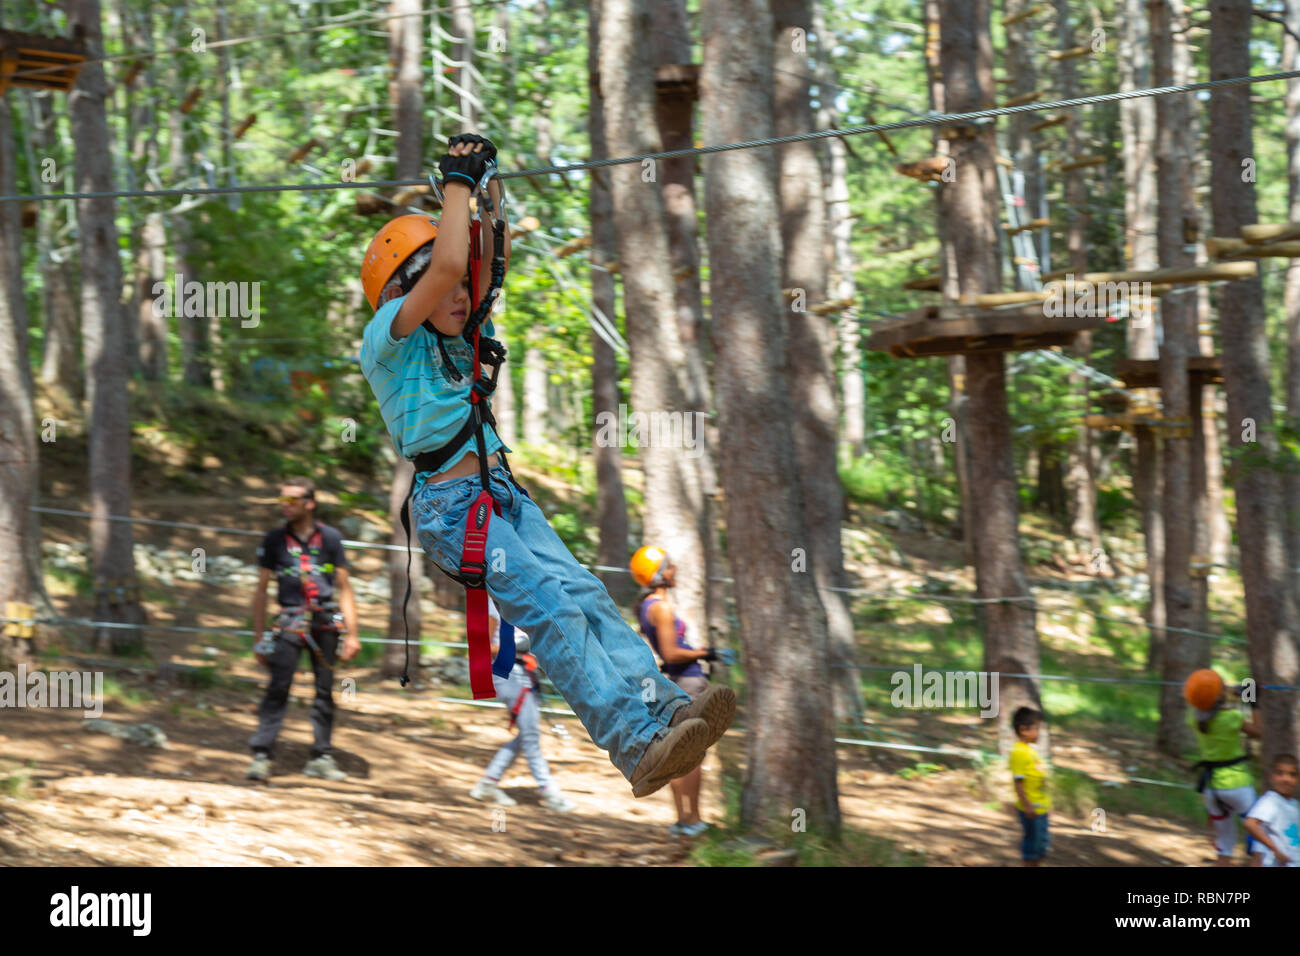 Garçon avec des harnais de sécurité en escalade parc aventure dans la forêt de pins. Guardiagrele, .Abruzzo, Italie Banque D'Images